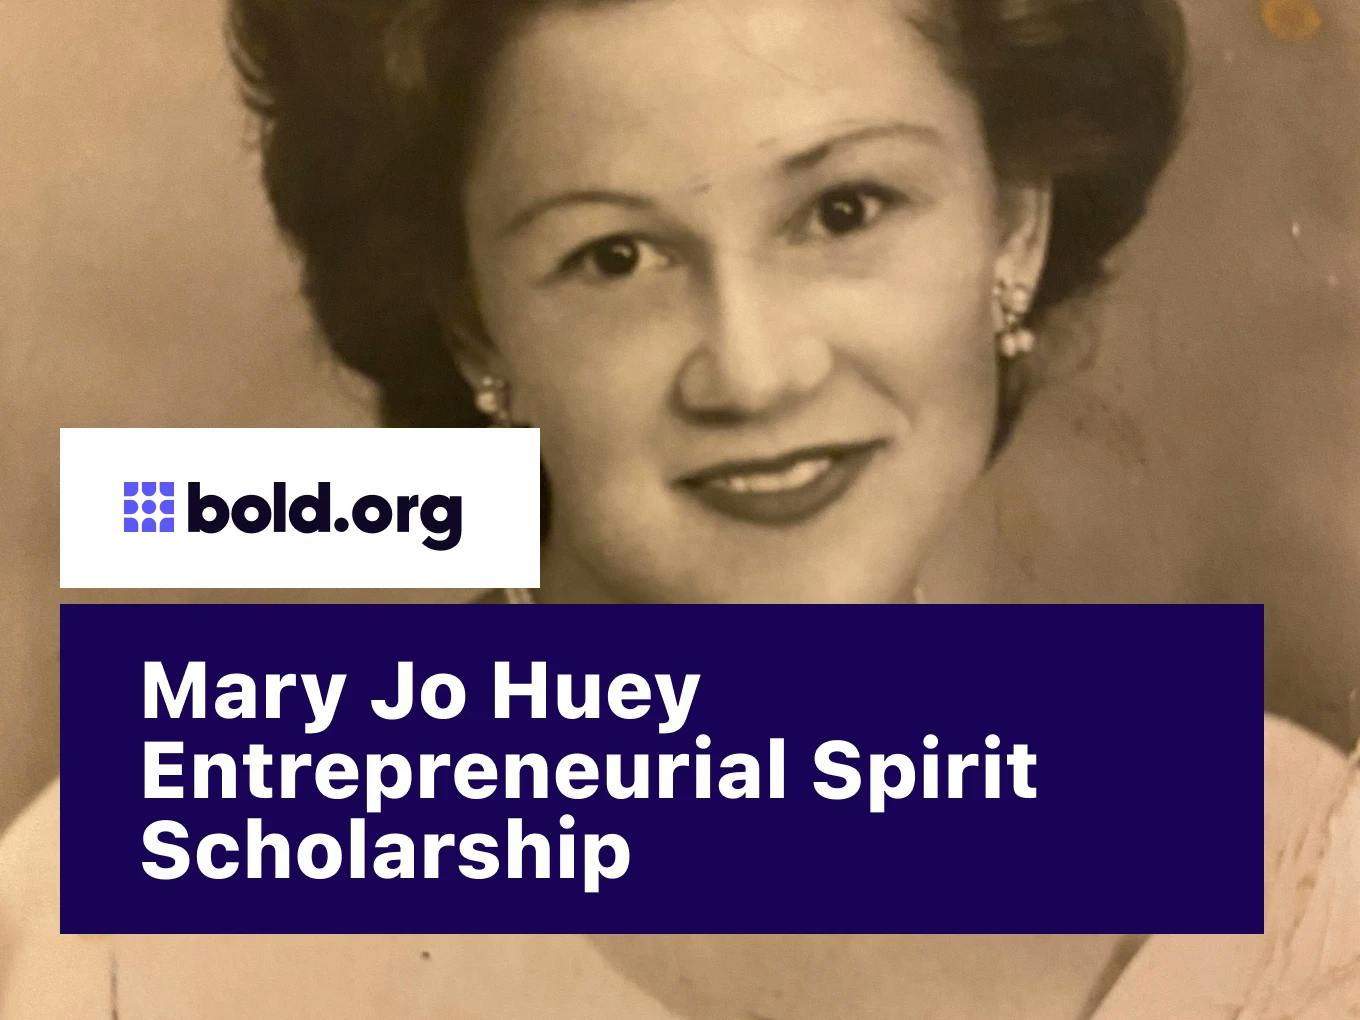 Mary Jo Huey Scholarship